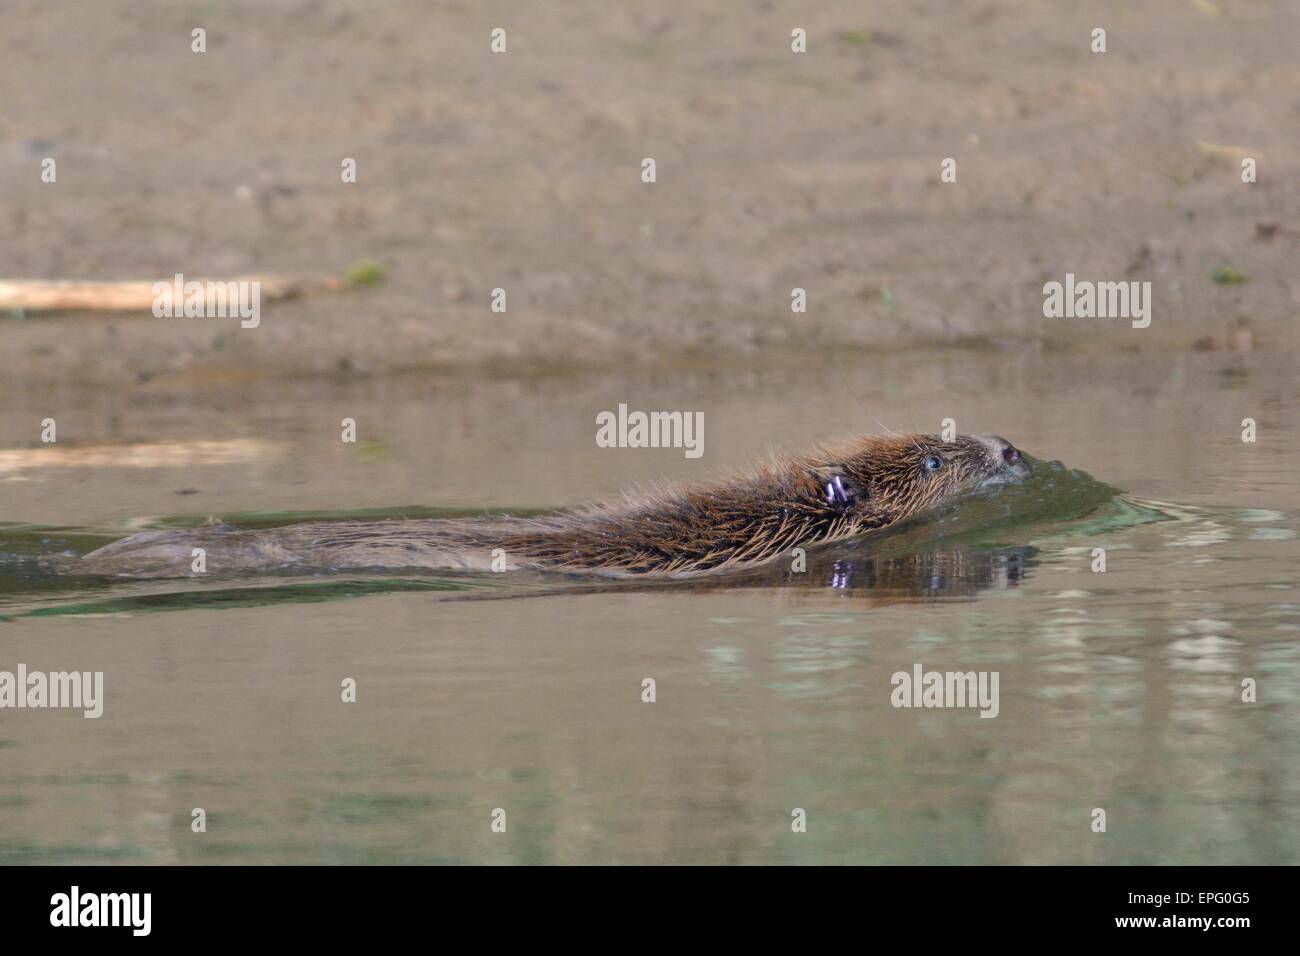 Le castor d'Eurasie (Castor fiber) baignade dans la rivière Otter après contrôle pour les maladies et renvoyée dans son territoire. Banque D'Images